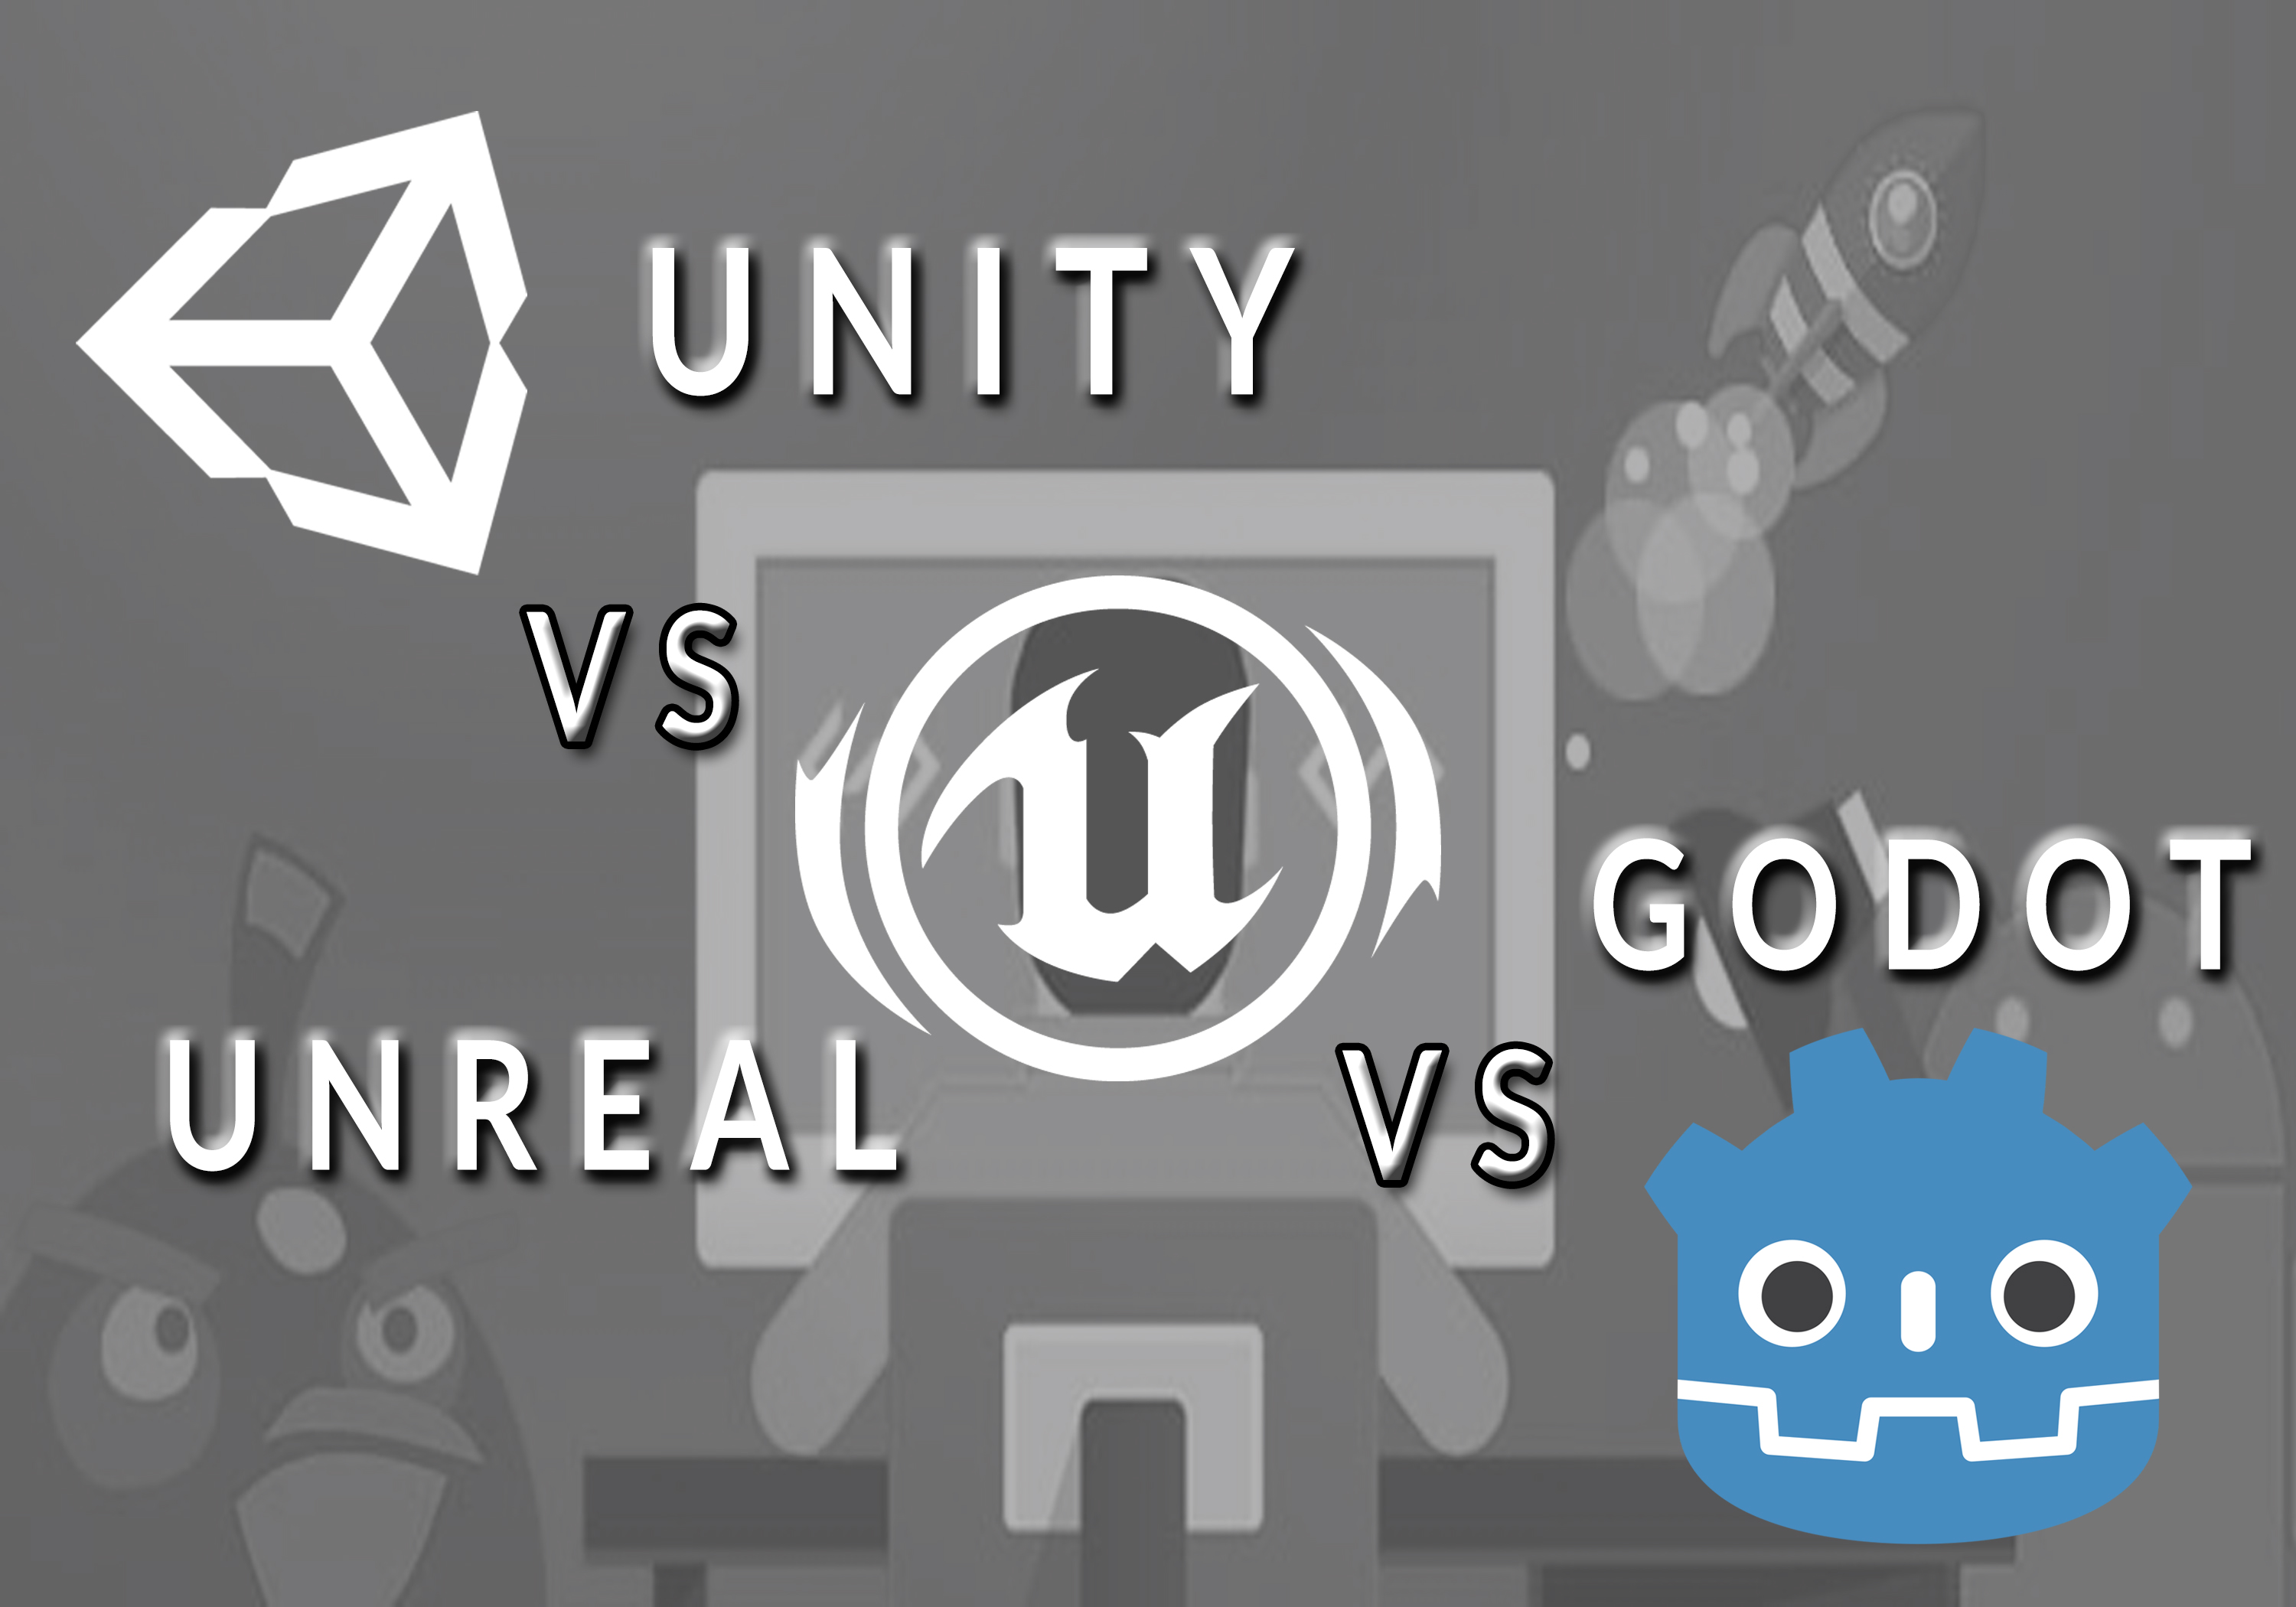 Unity 4. Godot engine vs Unity.